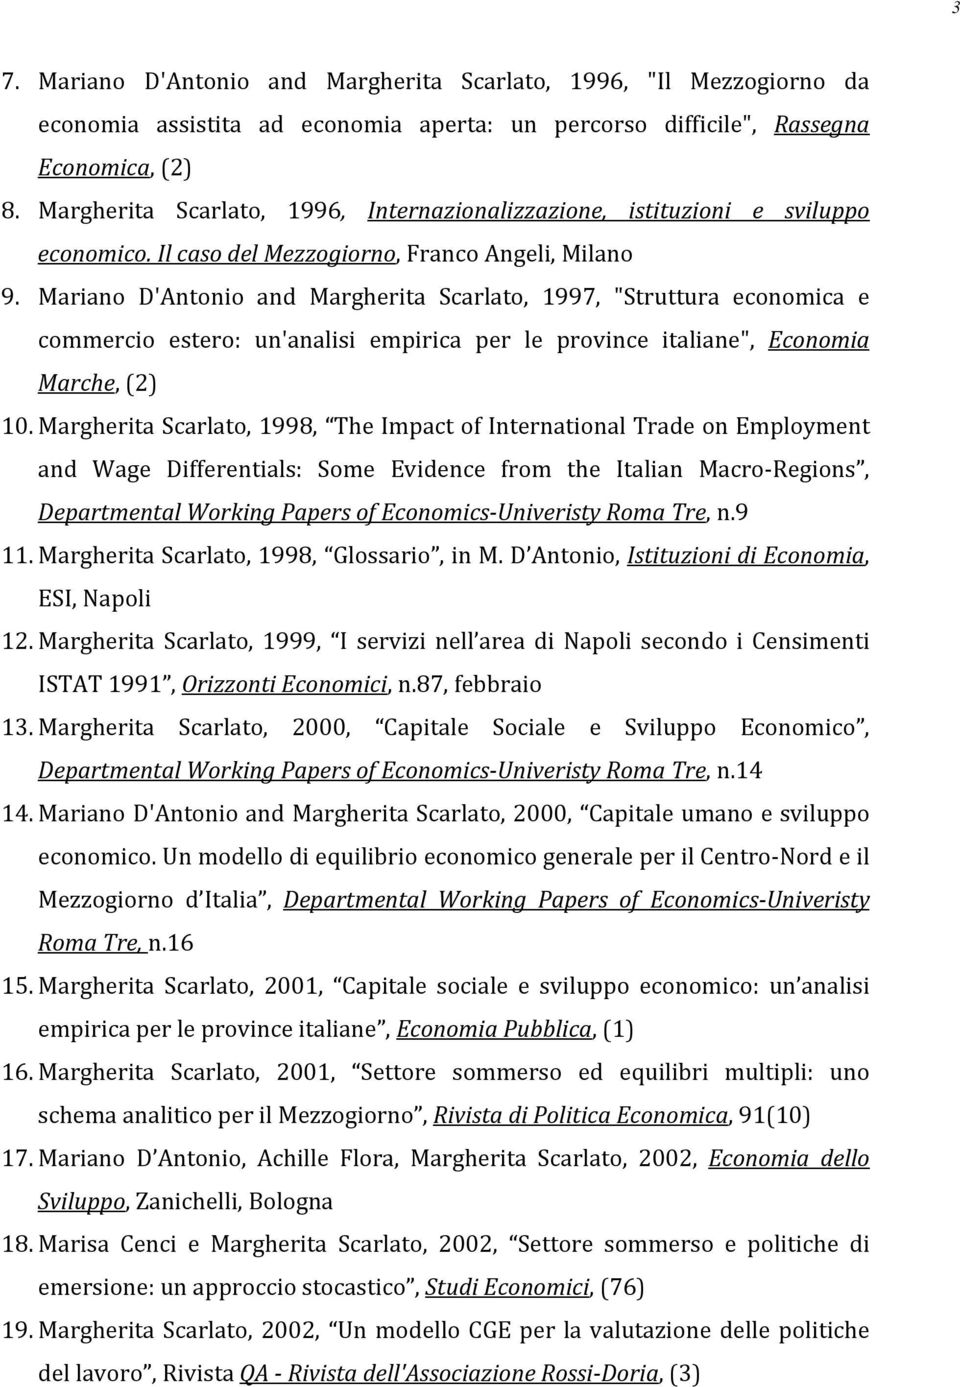 Mariano D'Antonio and Margherita Scarlato, 1997, "Struttura economica e commercio estero: un'analisi empirica per le province italiane", Economia Marche, (2) 10.